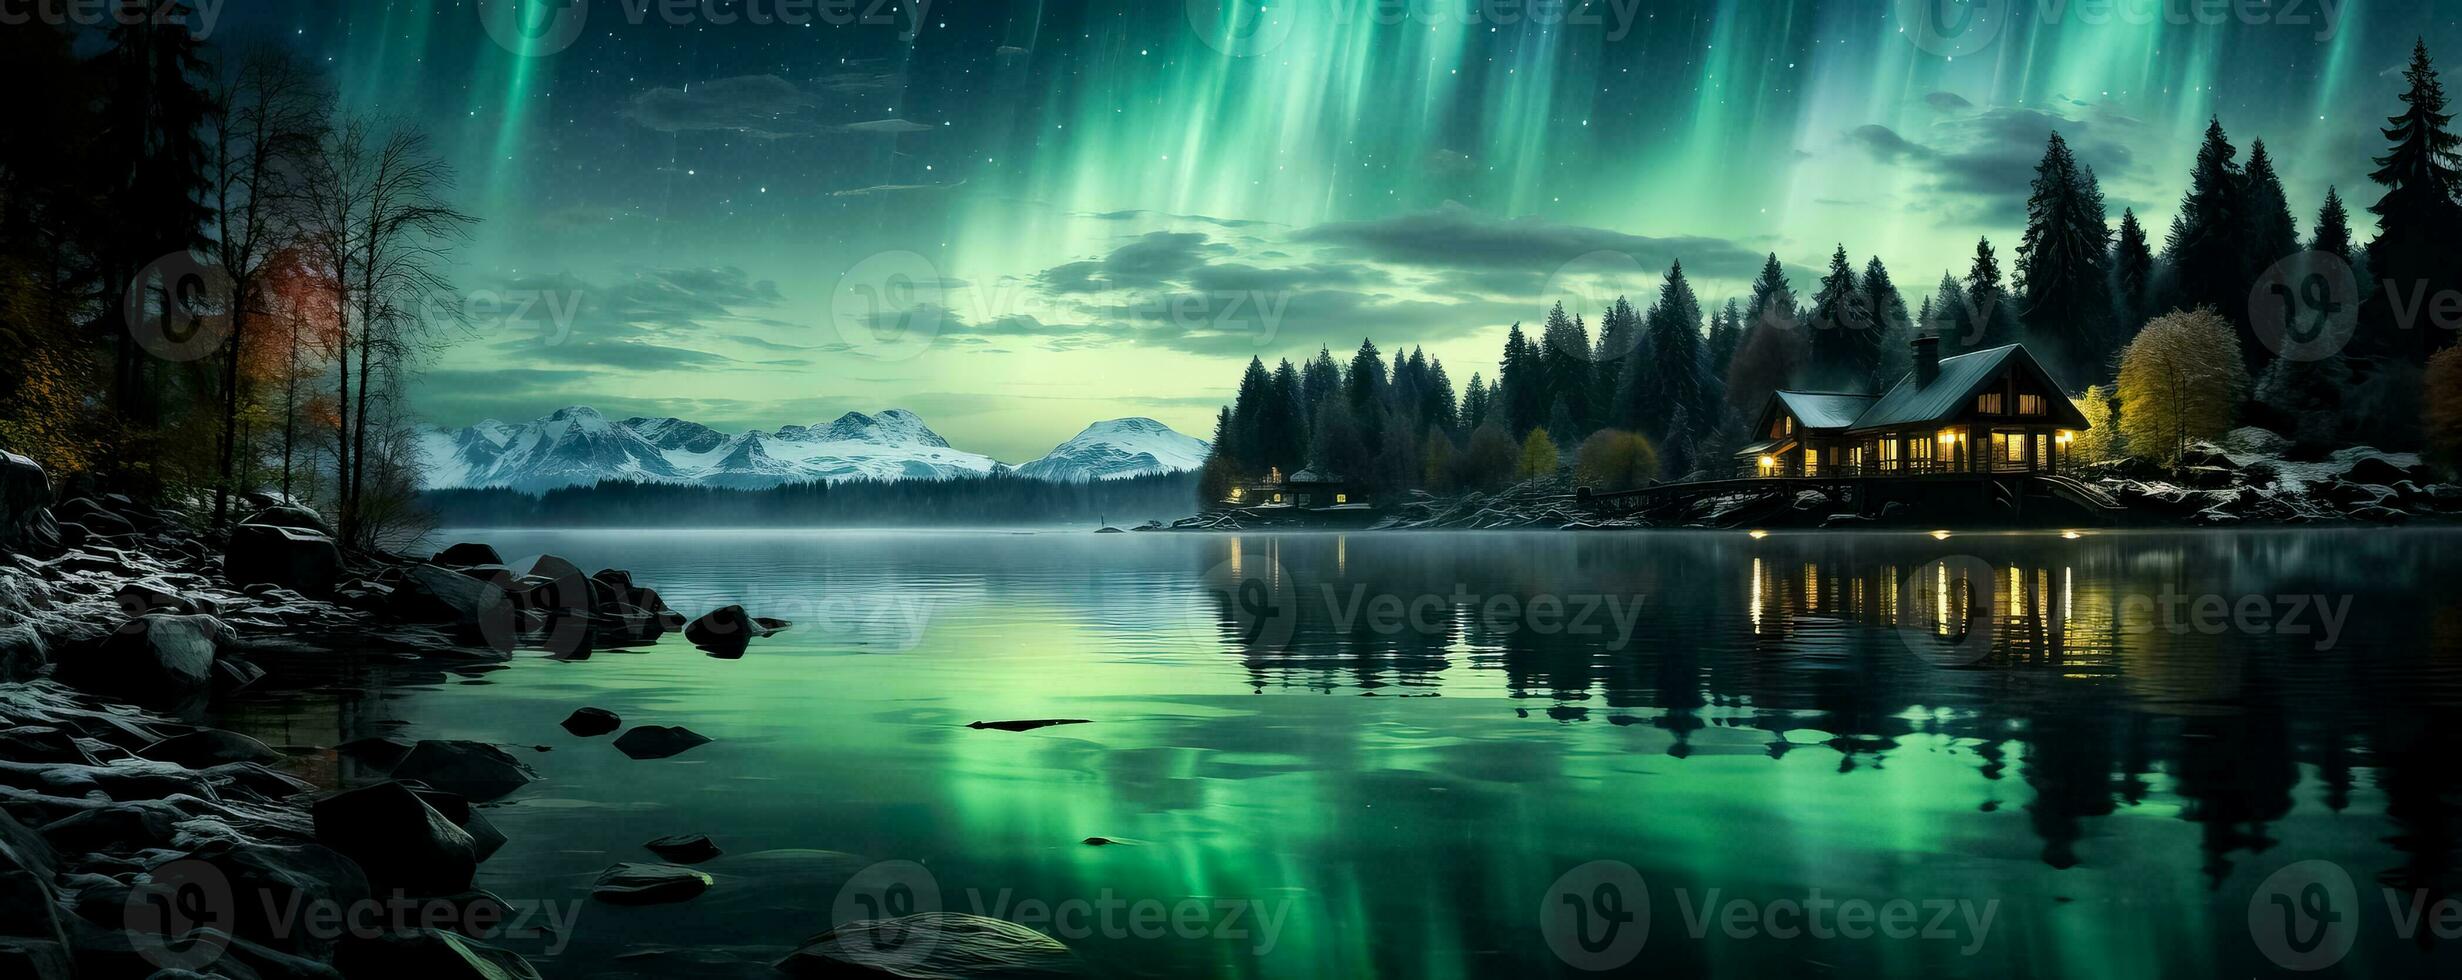 un incantevole miscela di vivace verdura e viola danza attraverso il notte cielo marcatura il etereo bellezza di il aurora Borealis nel nordico paesi delle meraviglie foto